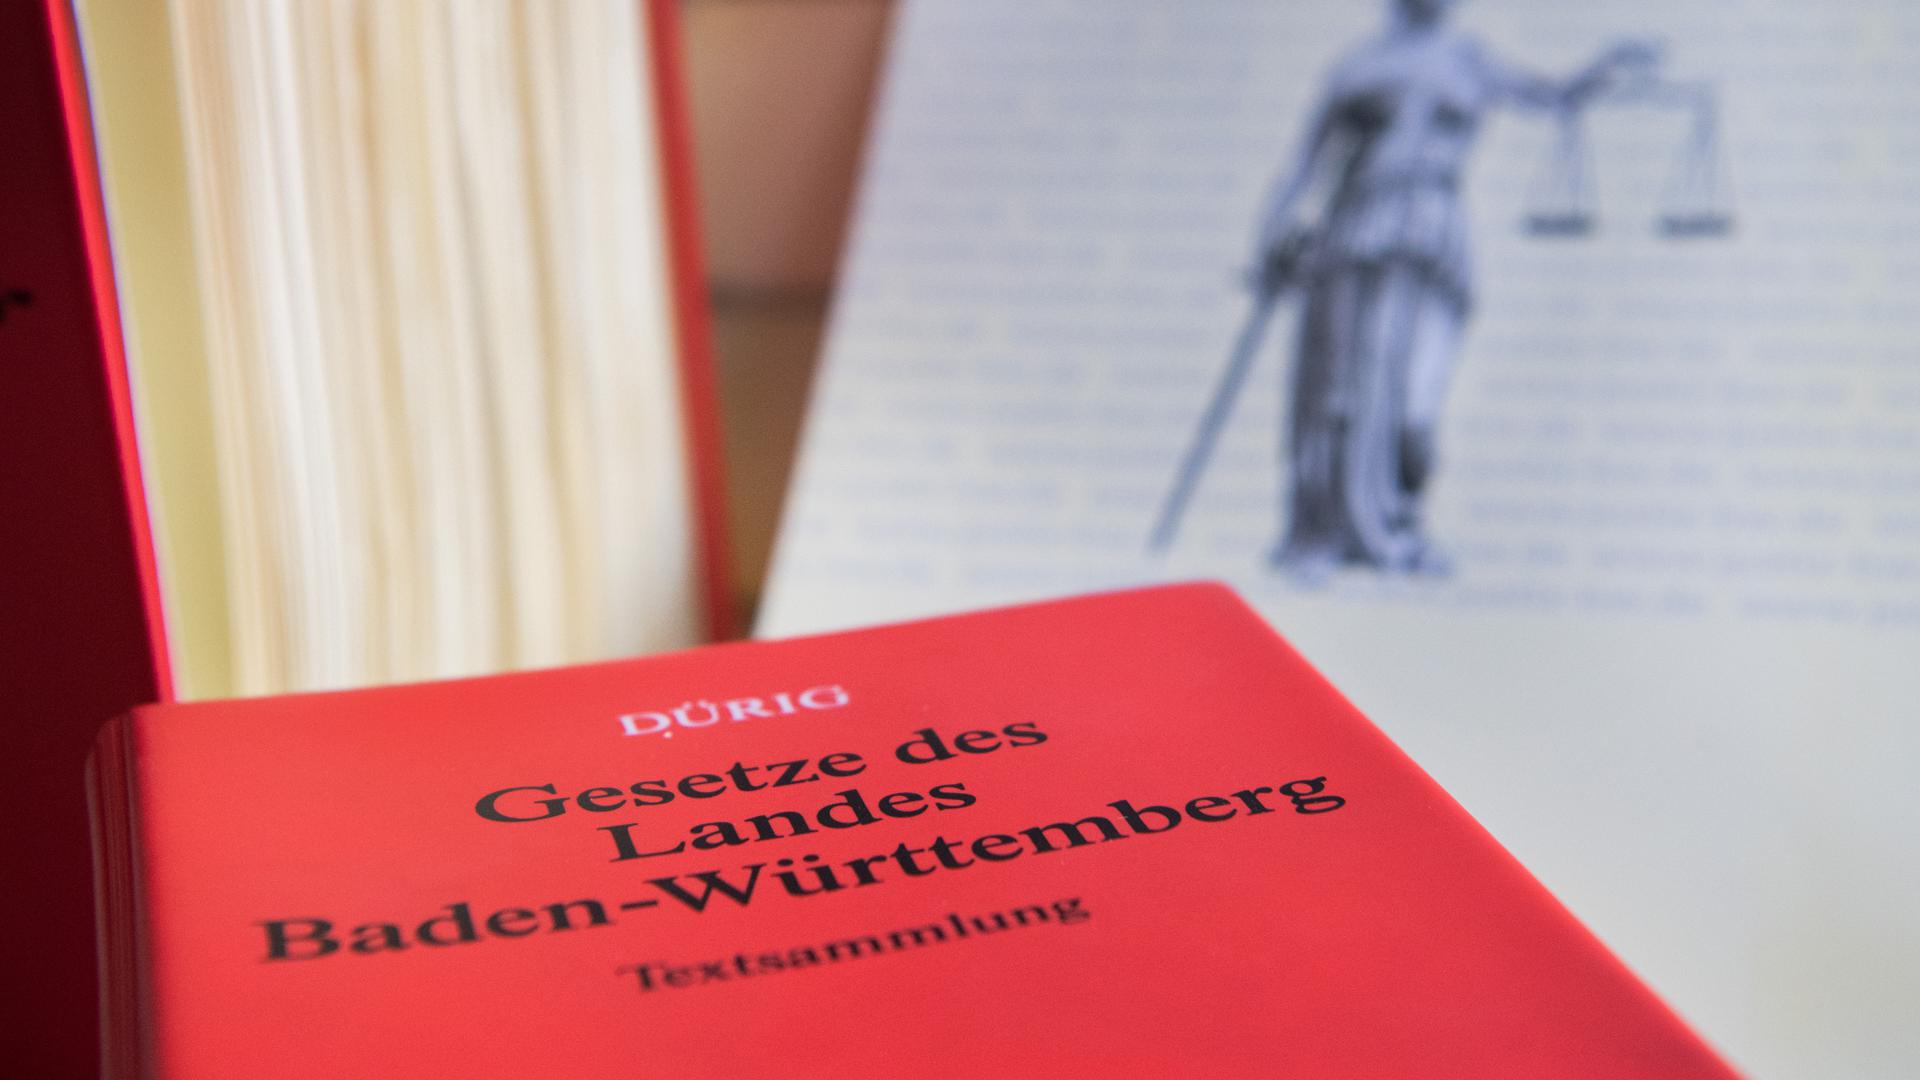 Ein Buch mit der Aufschrift "Gesetze des Landes Baden-Württemberg" liegt auf einem Tisch. Im Hintergrund sind eine Justitia-Abbildung und ein weiteres Gesetzbuch zu sehen (gestellte Szene). 